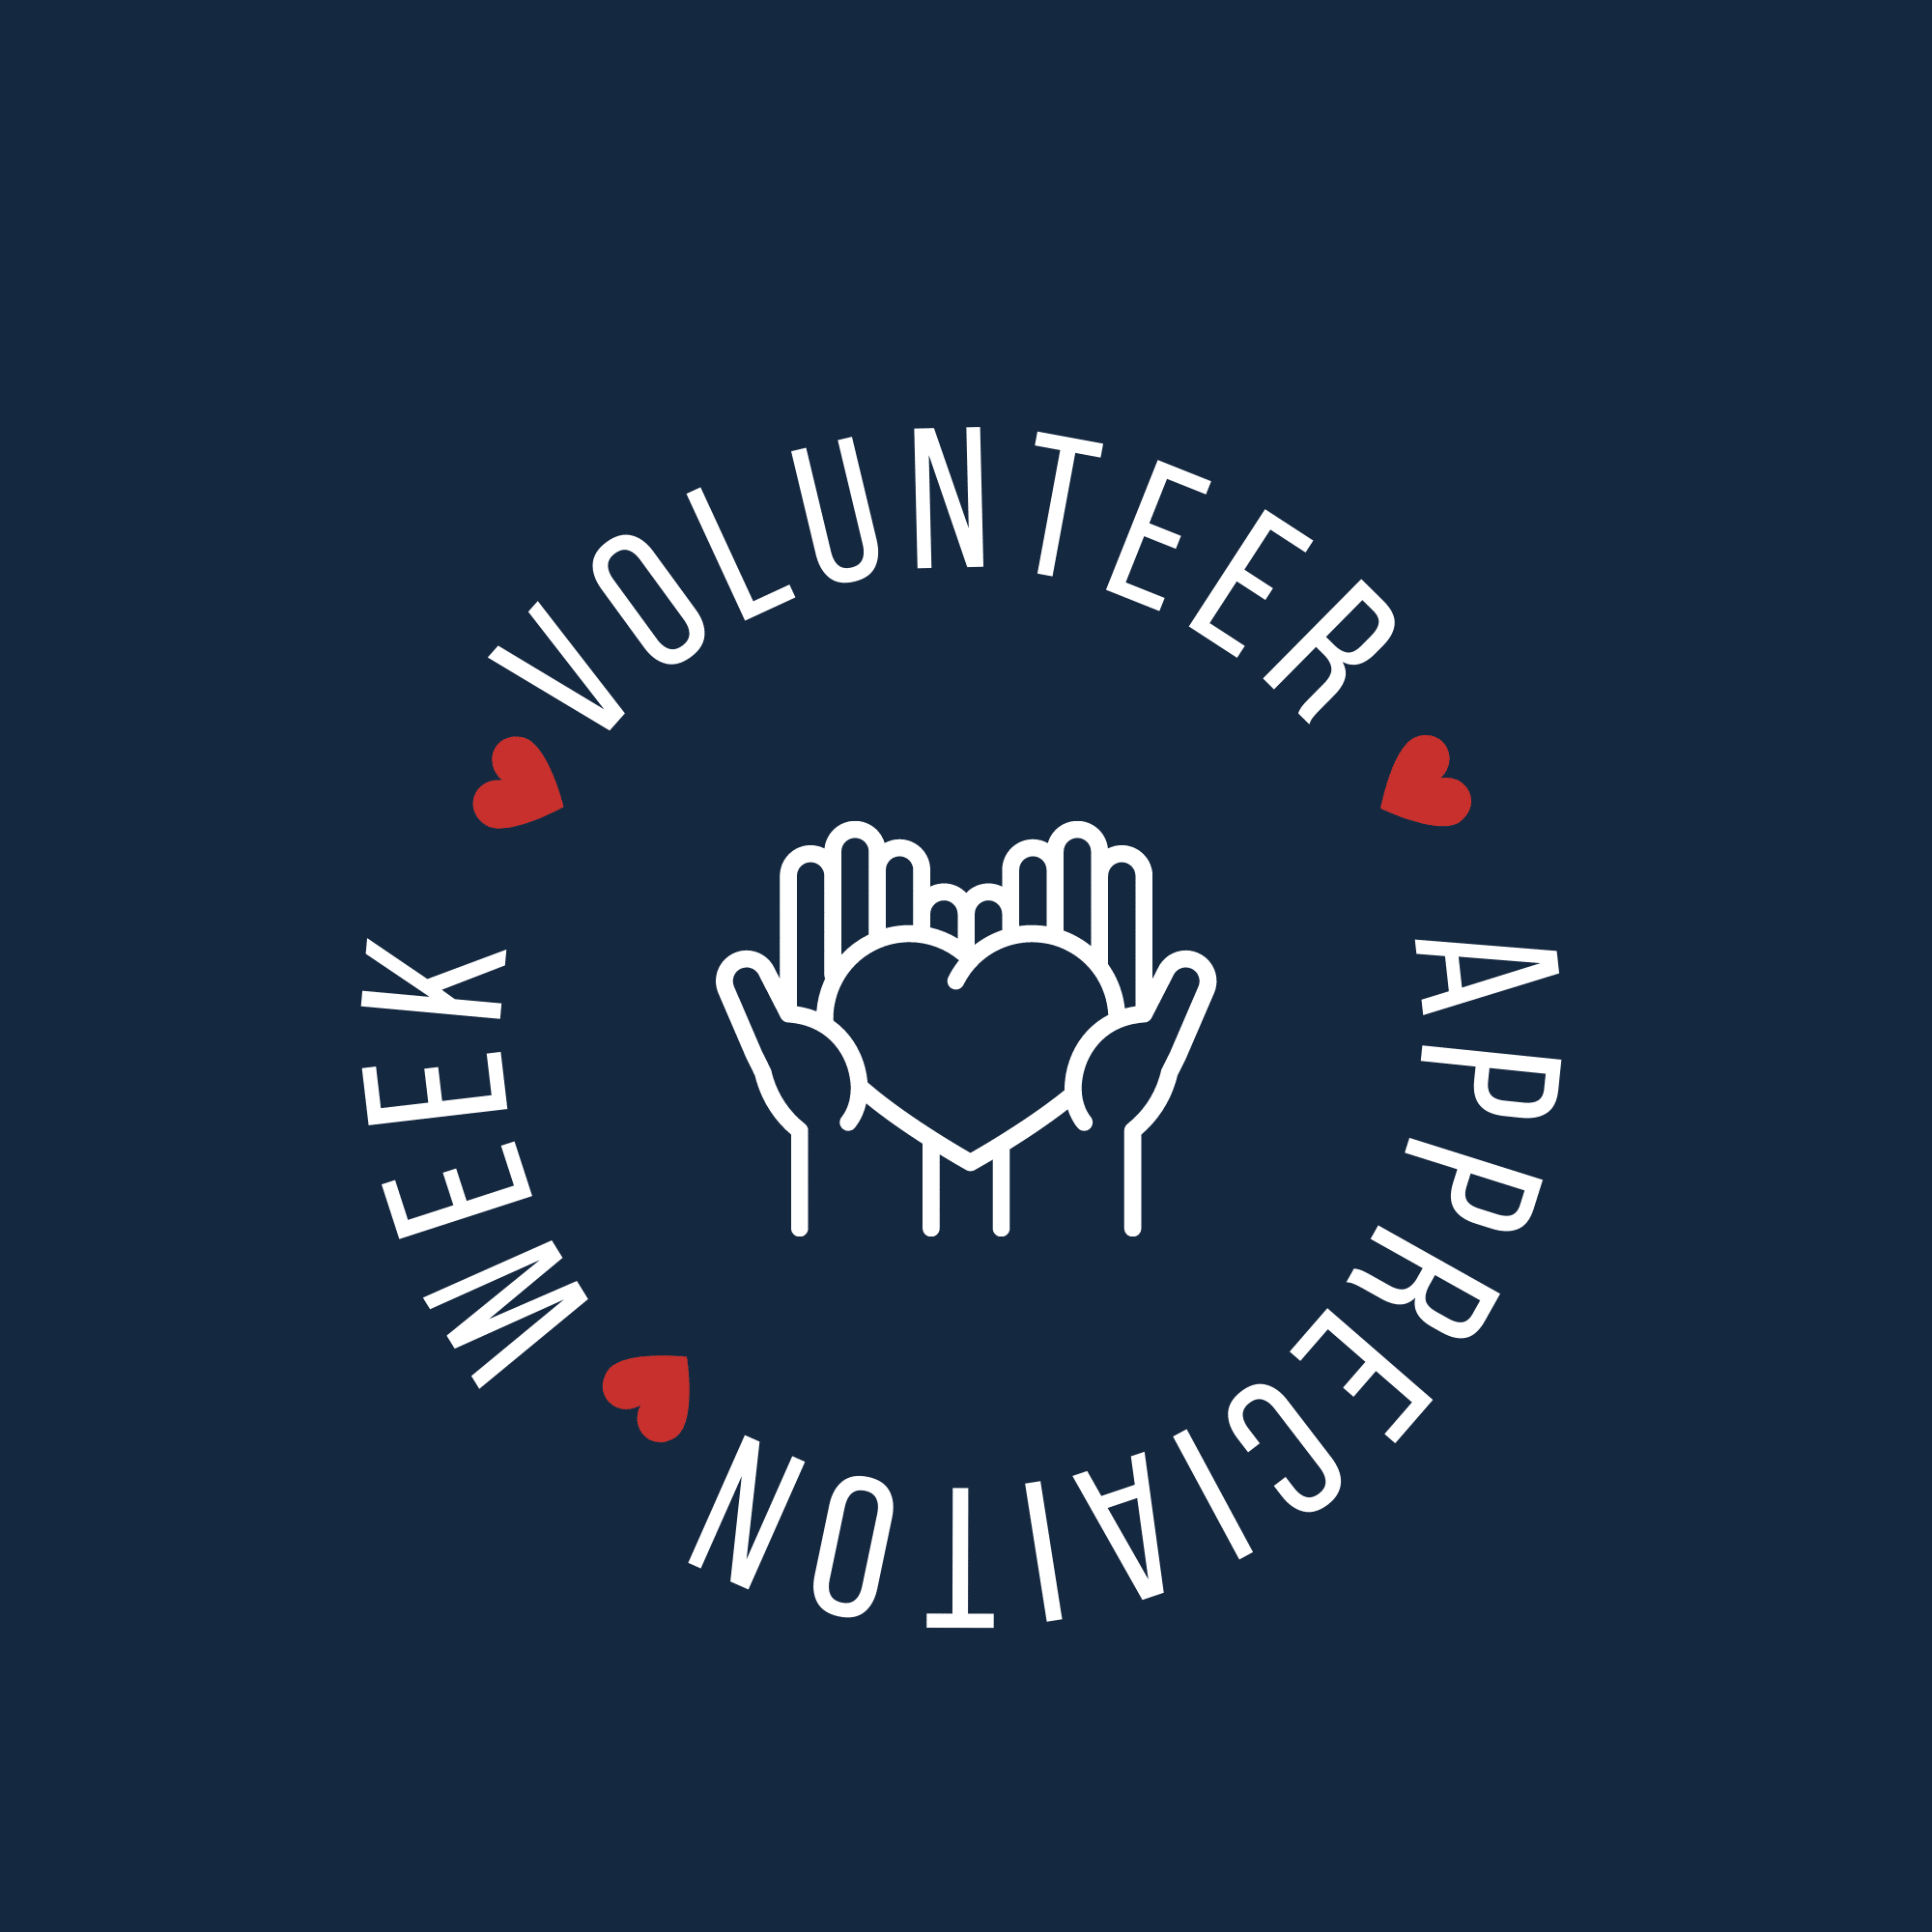 Volunteer Appreciation Week